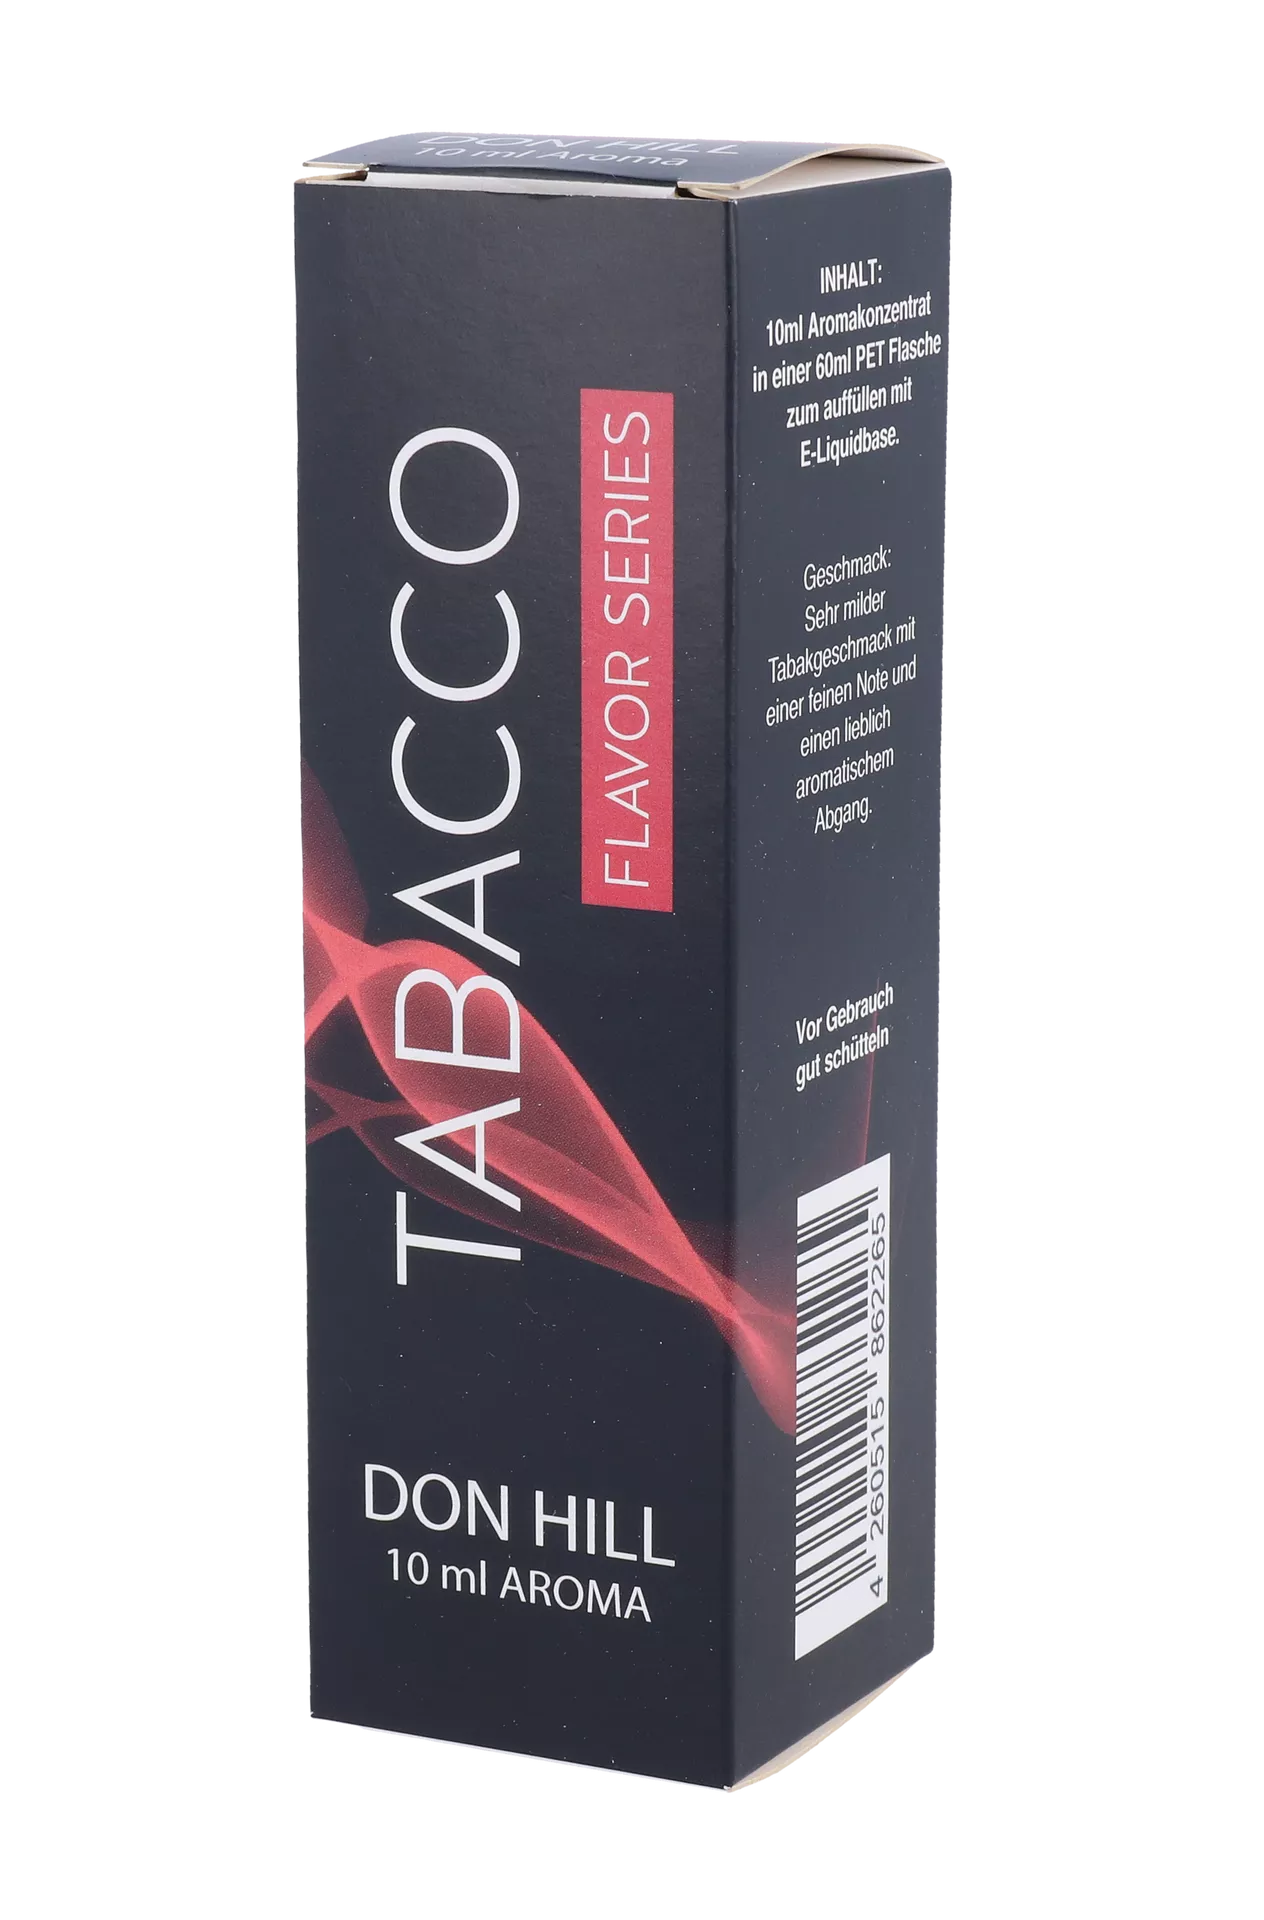 Ezigaro Pro Tabacco - Aroma Don Hill 10ml *Sonderposten*